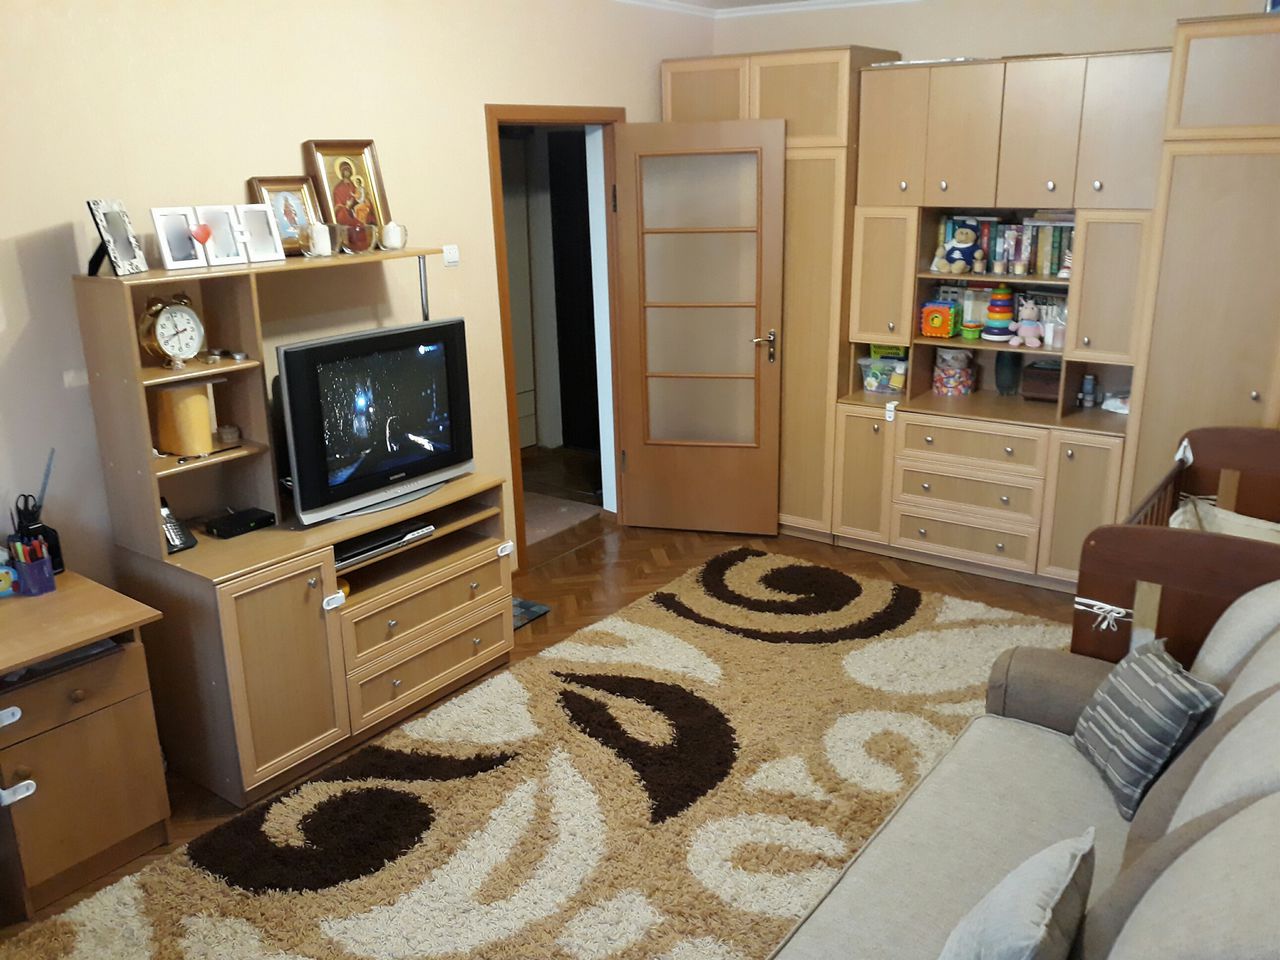 1а комнатную квартиру. Обставить комнату. Комната обычная. Обстановка мебели в комнате. Мебель для однокомнатной квартиры.